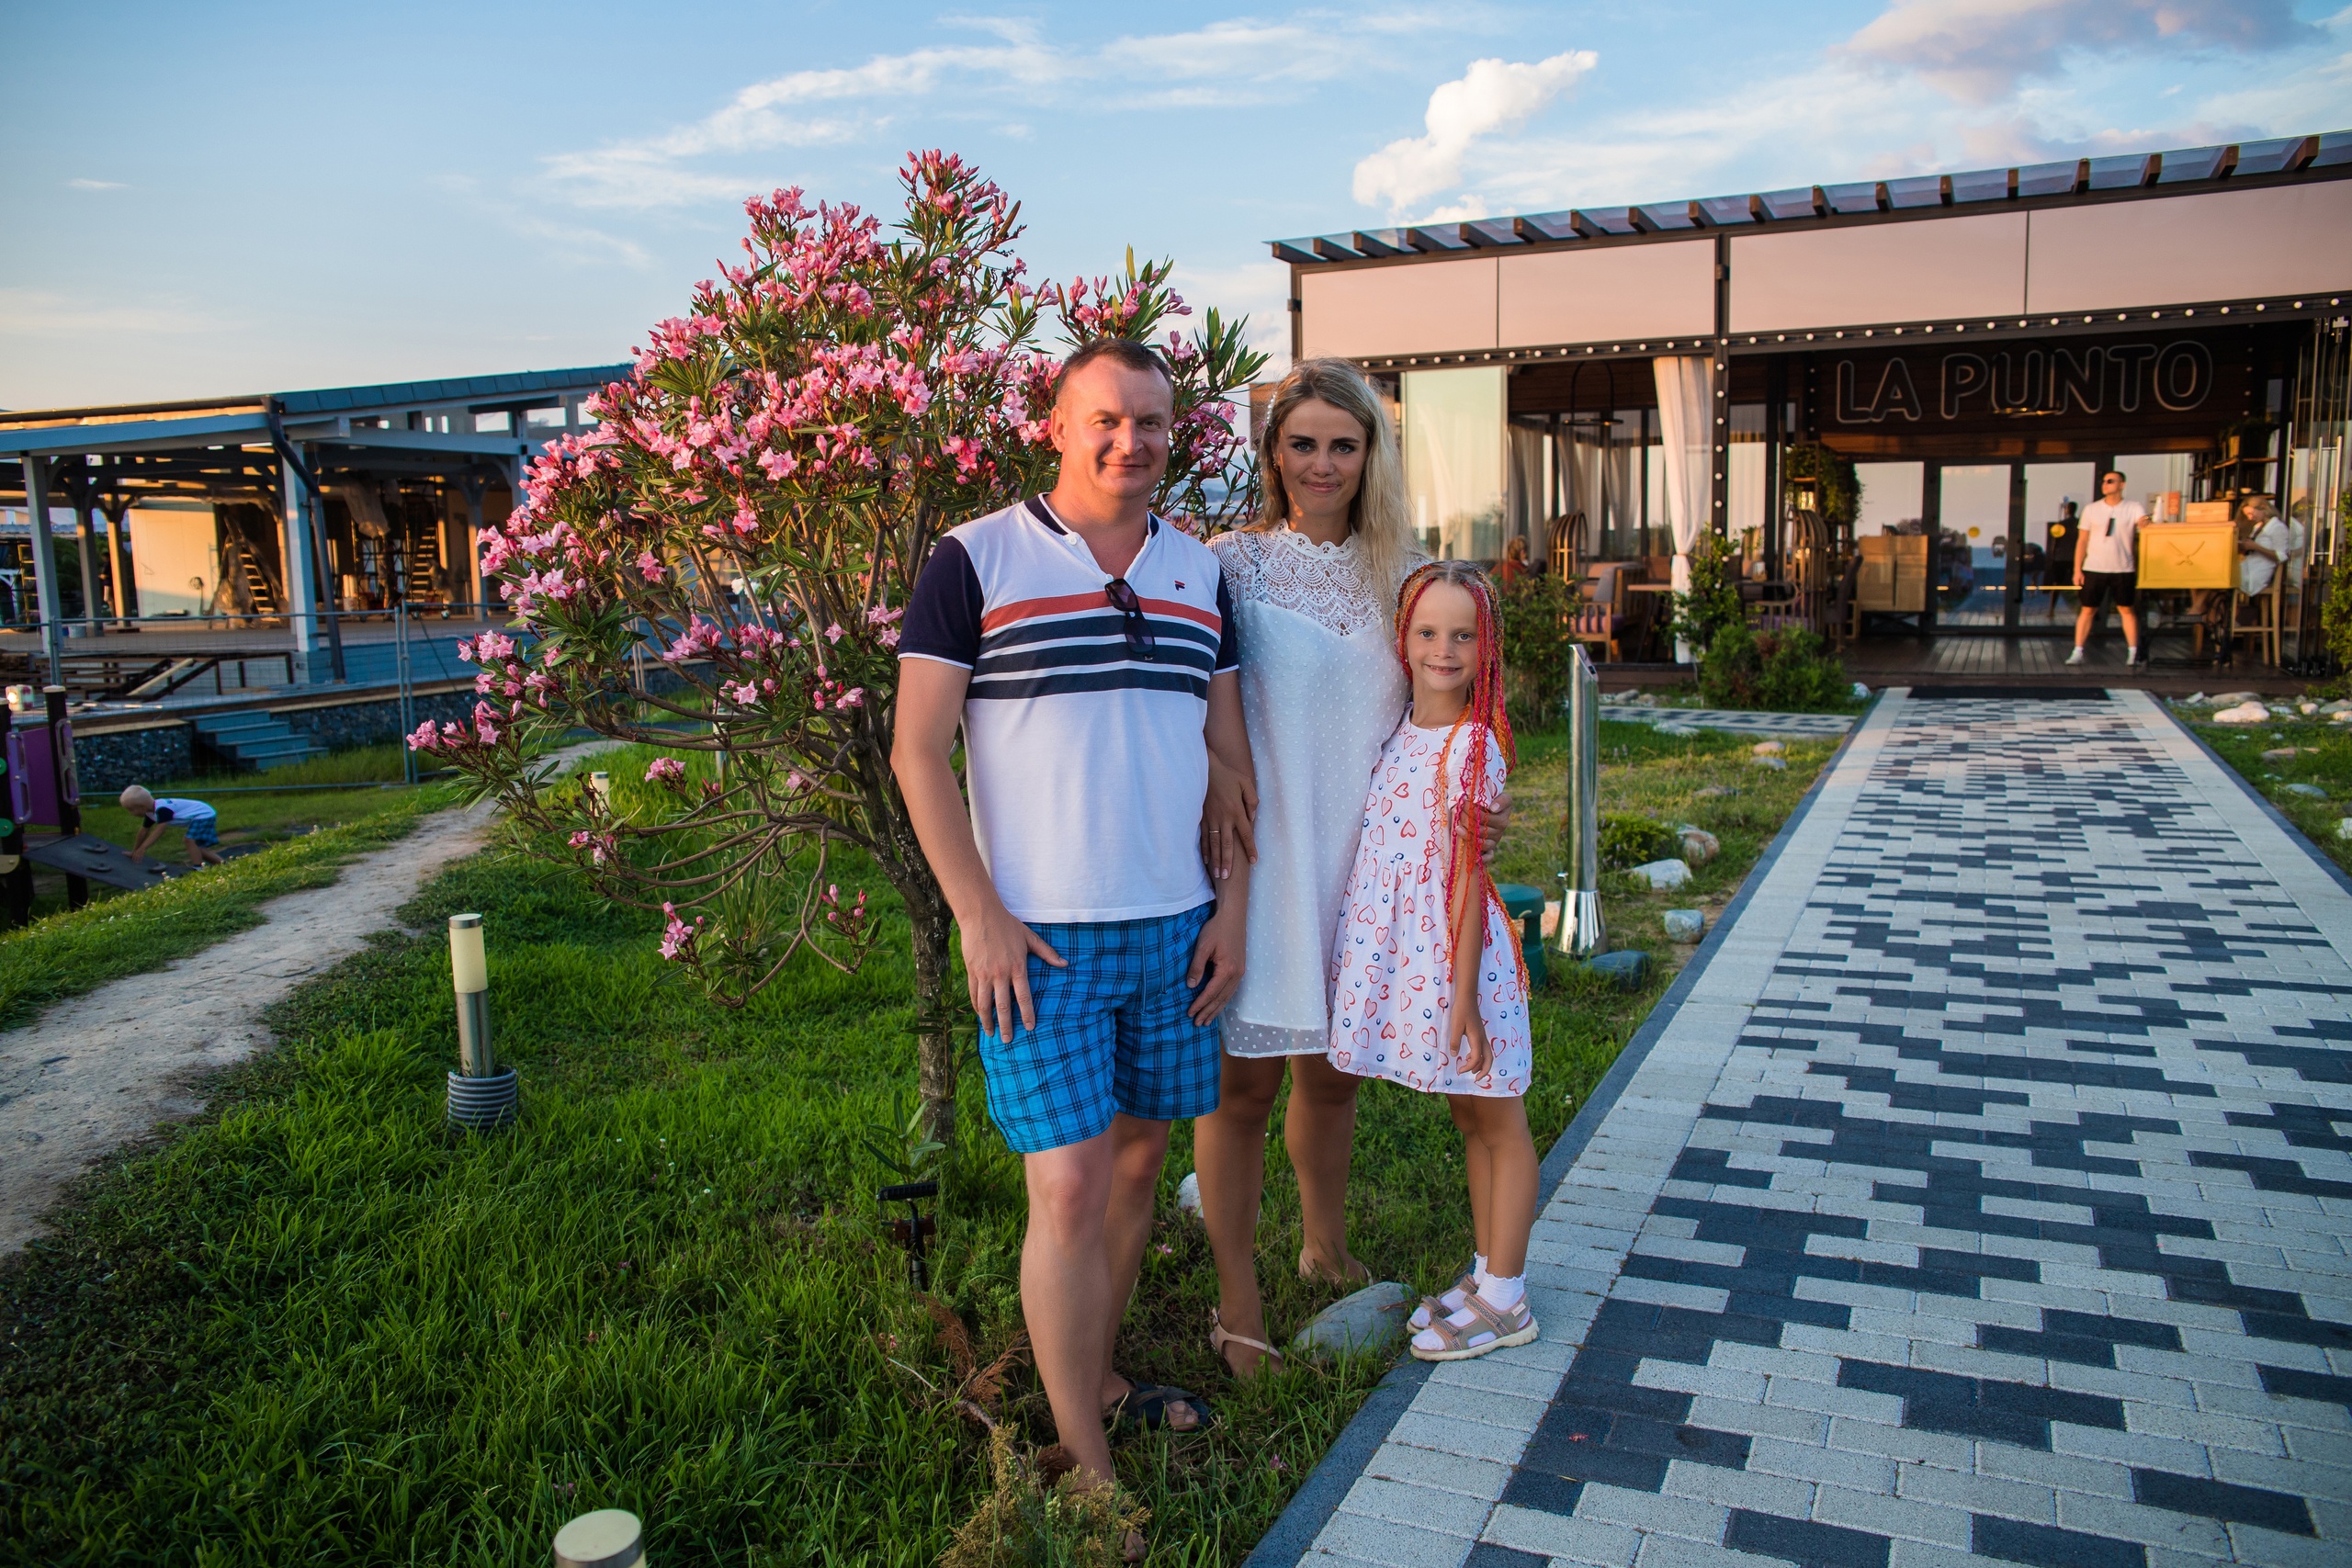 Семейная фотосессия в Адлере - Фотограф MaryVish.ru